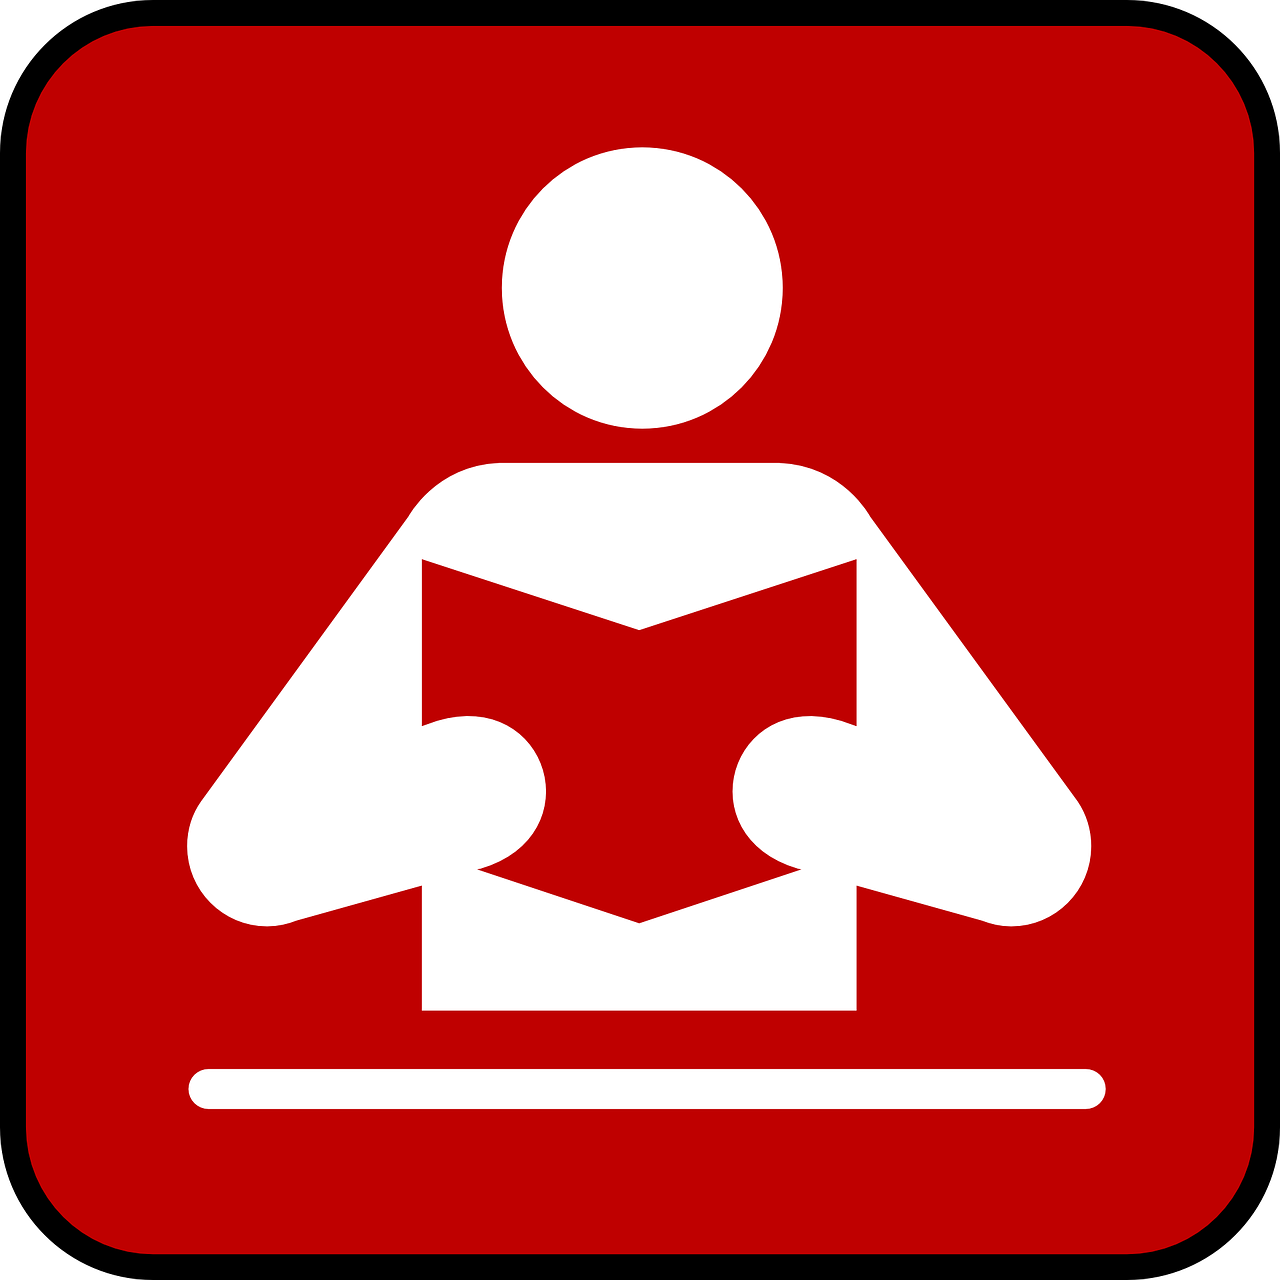 Skaitytojas, Knyga, Simbolis, Piktograma, Skaitymas, Švietimas, Biblioteka, Literatūra, Informacija, Studijuoti